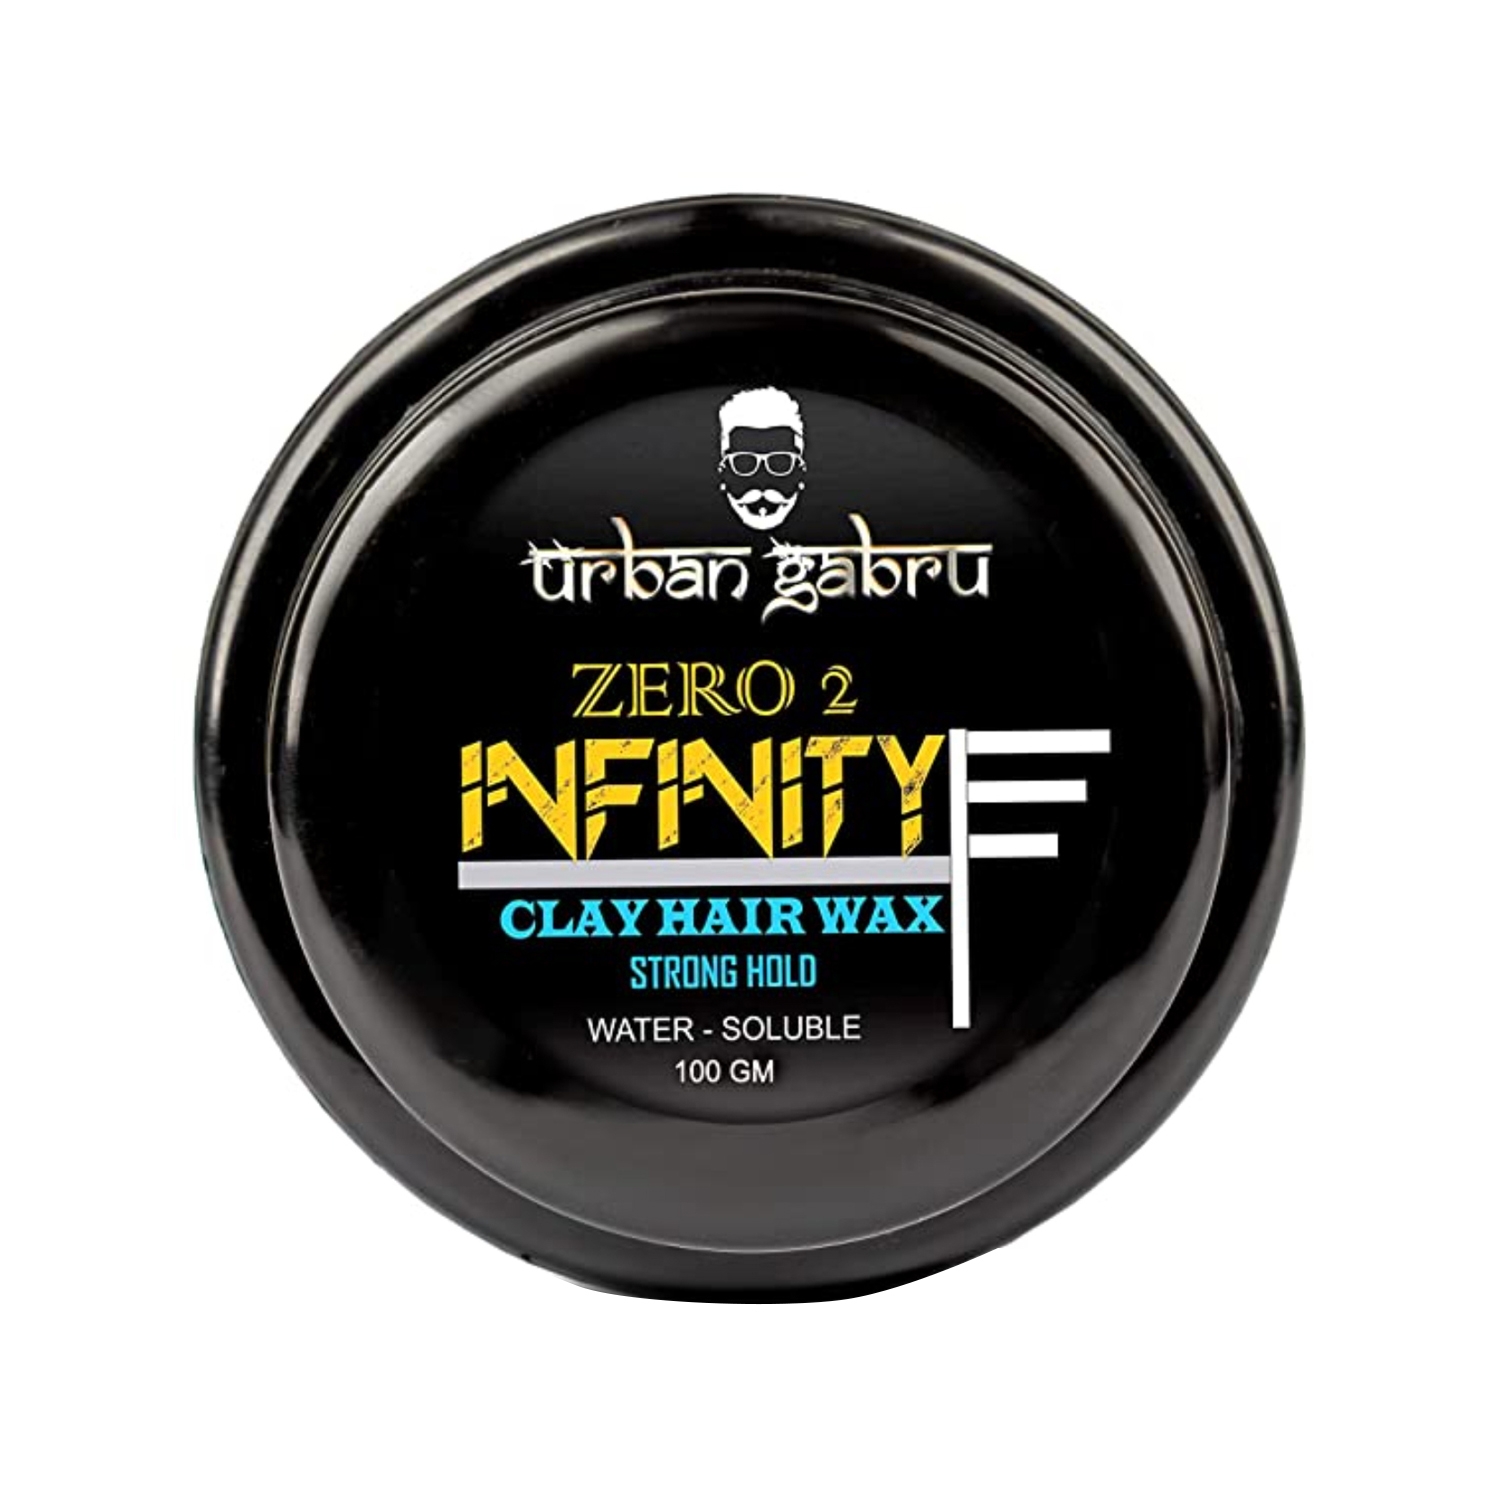 Urban Gabru | Urban Gabru Clay Hair Wax (100g)